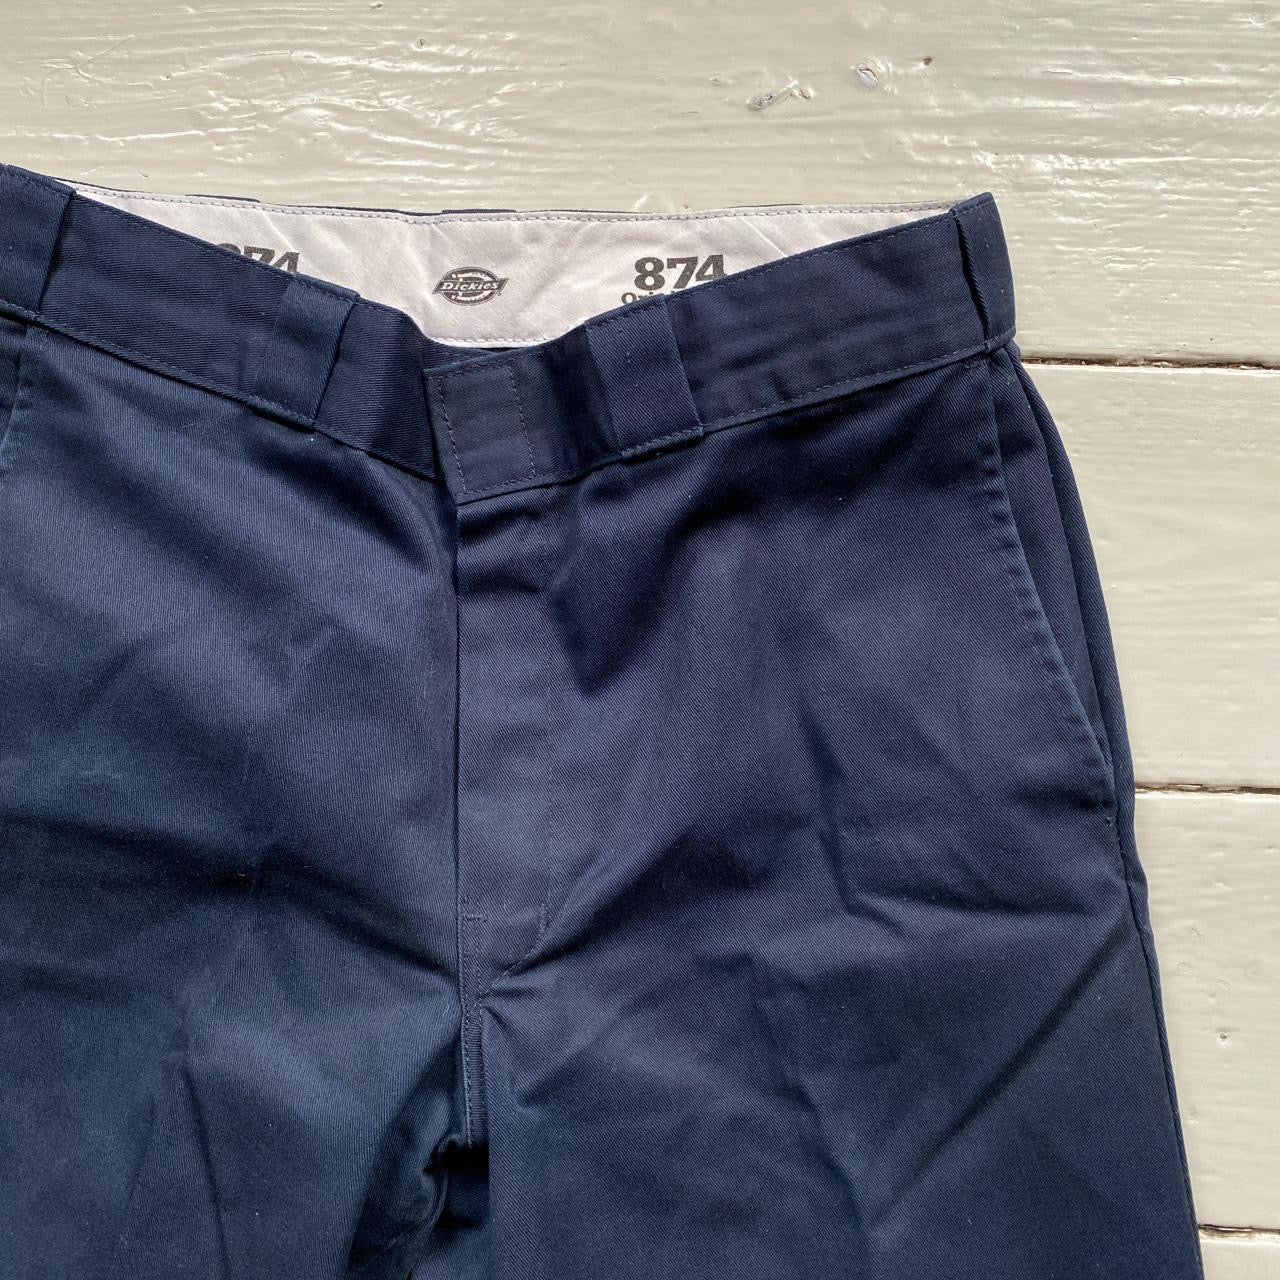 Dickies 874 Navy Trousers (32/30)